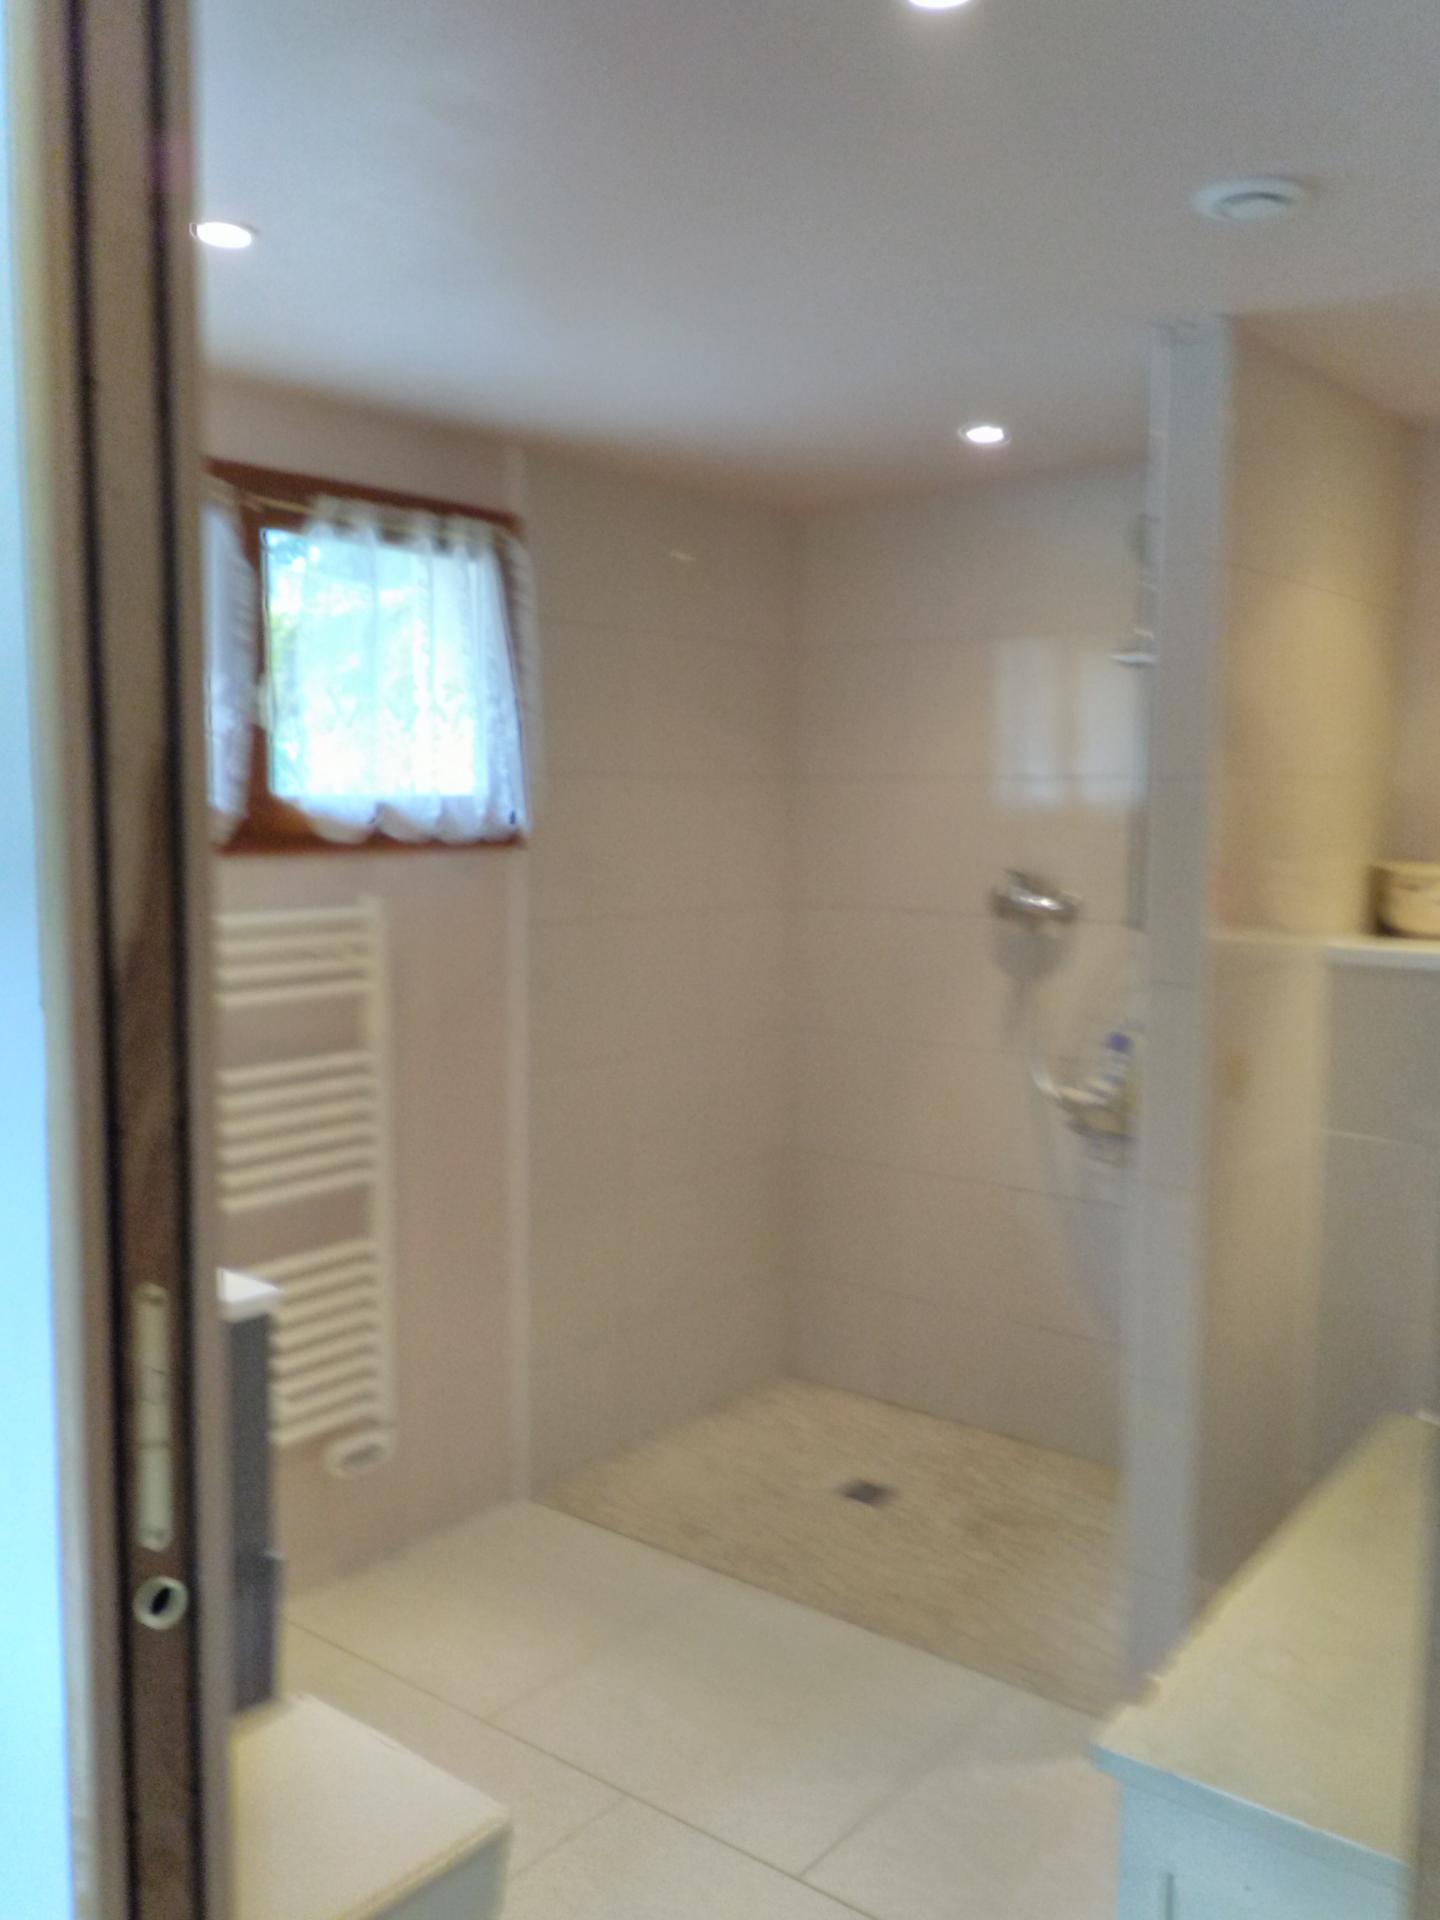 Salle de bain spacieuse avec douche à l'italienne